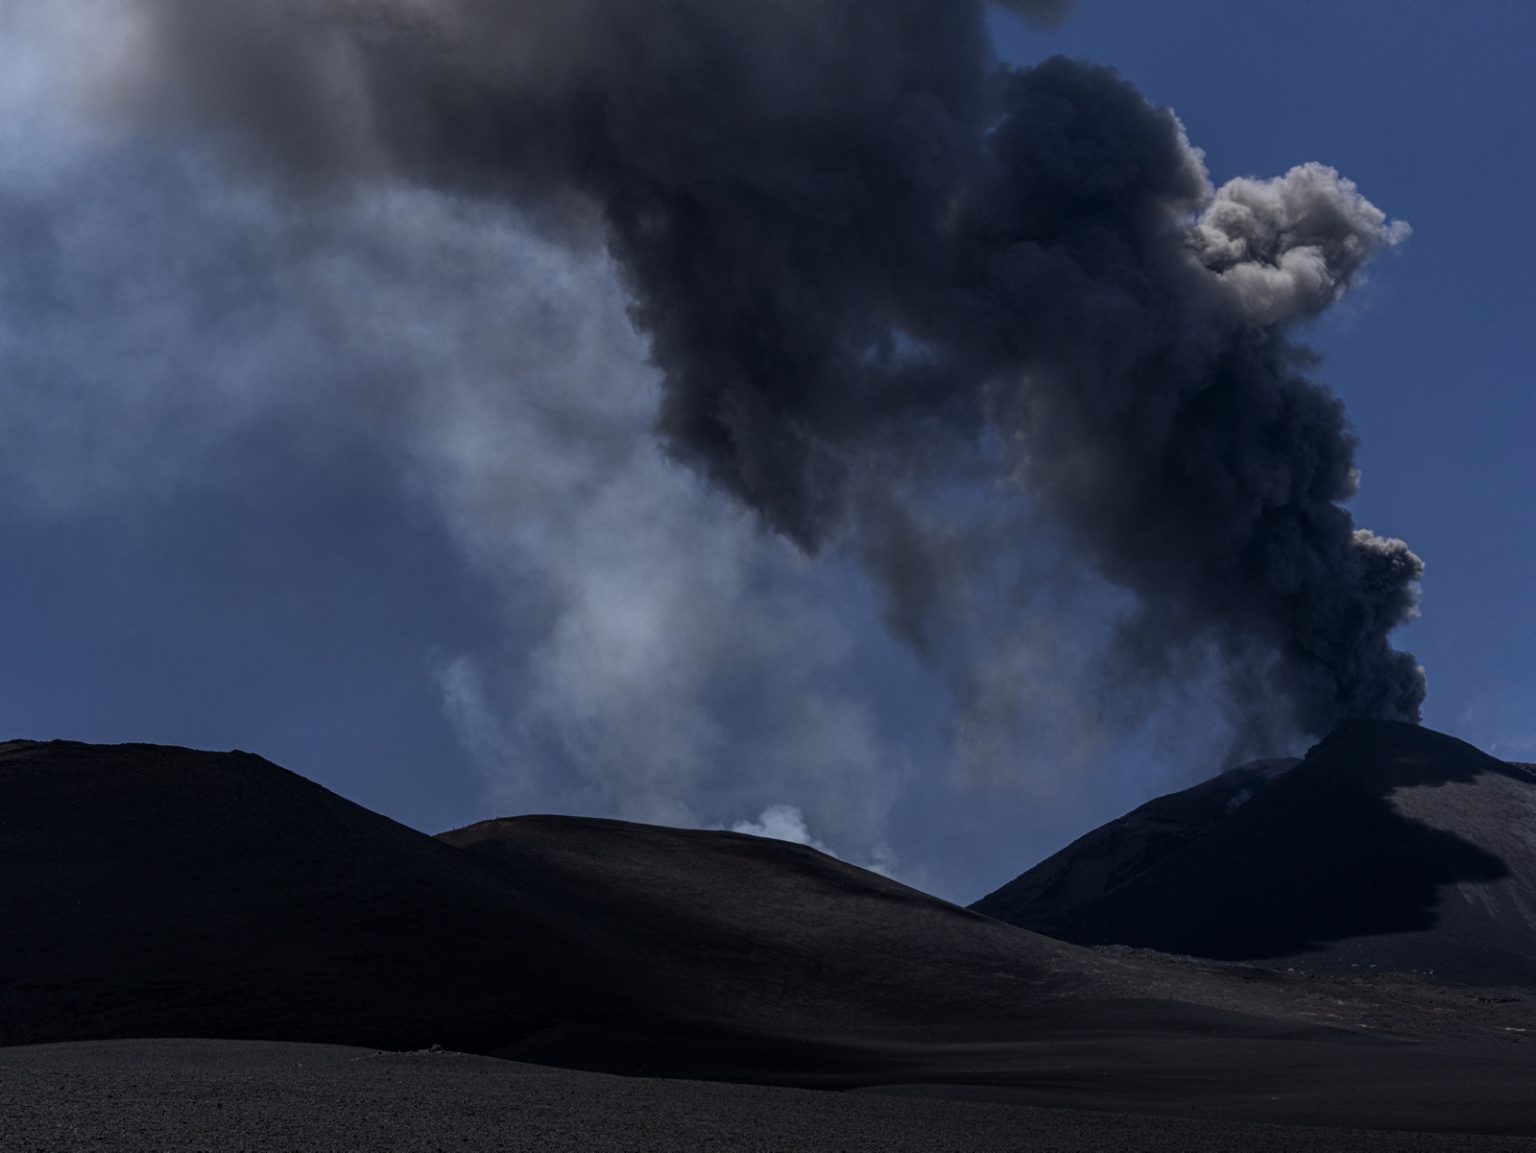 Etna Sud. Giugno 2022. Crateri sommitali. Eruzione in corso.
><
South Etna. June 2022. Summit craters. Eruption in progress.